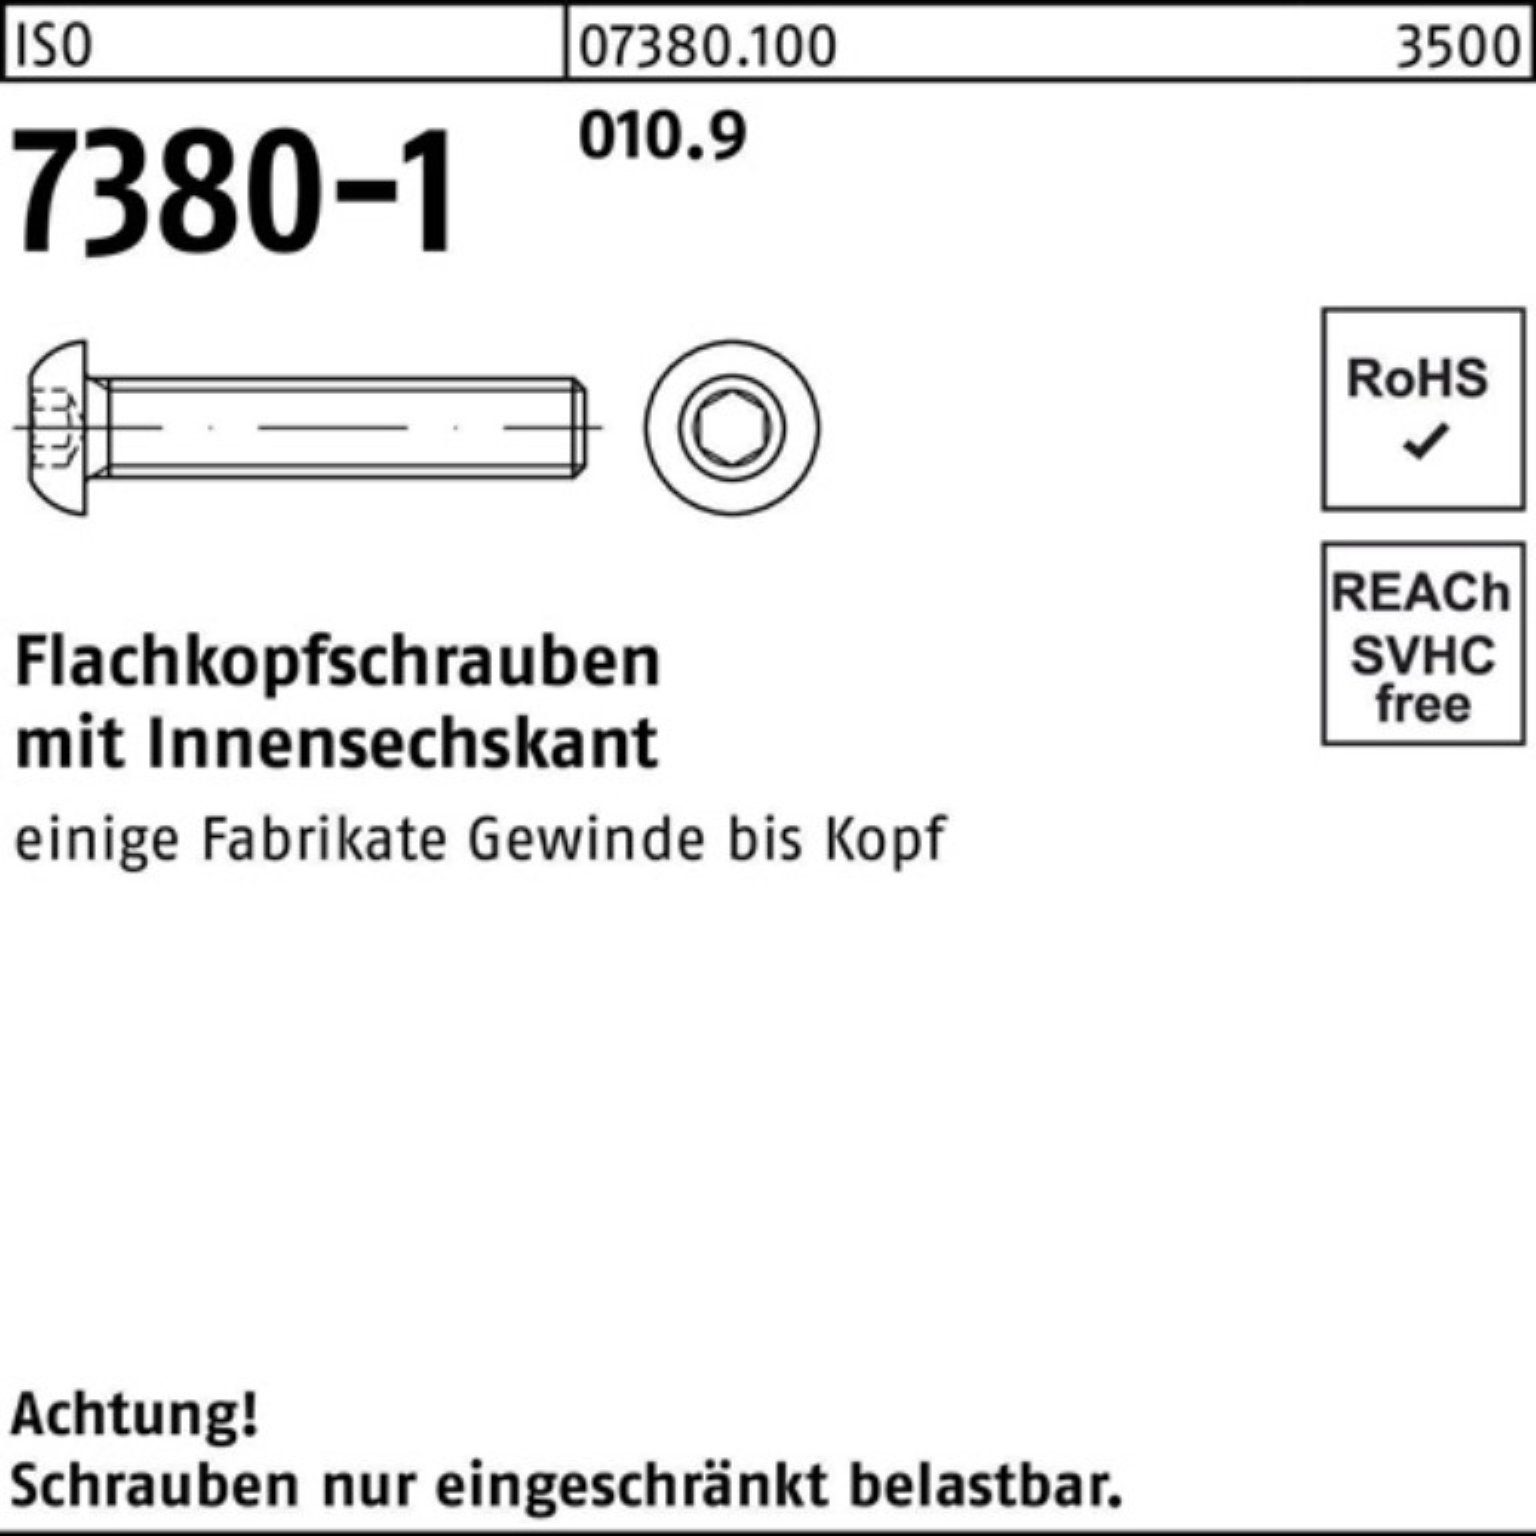 Reyher Schraube 500er 7380-1 010.9 25 Flachkopfschraube Pack St Innen-6kt M5x 500 ISO